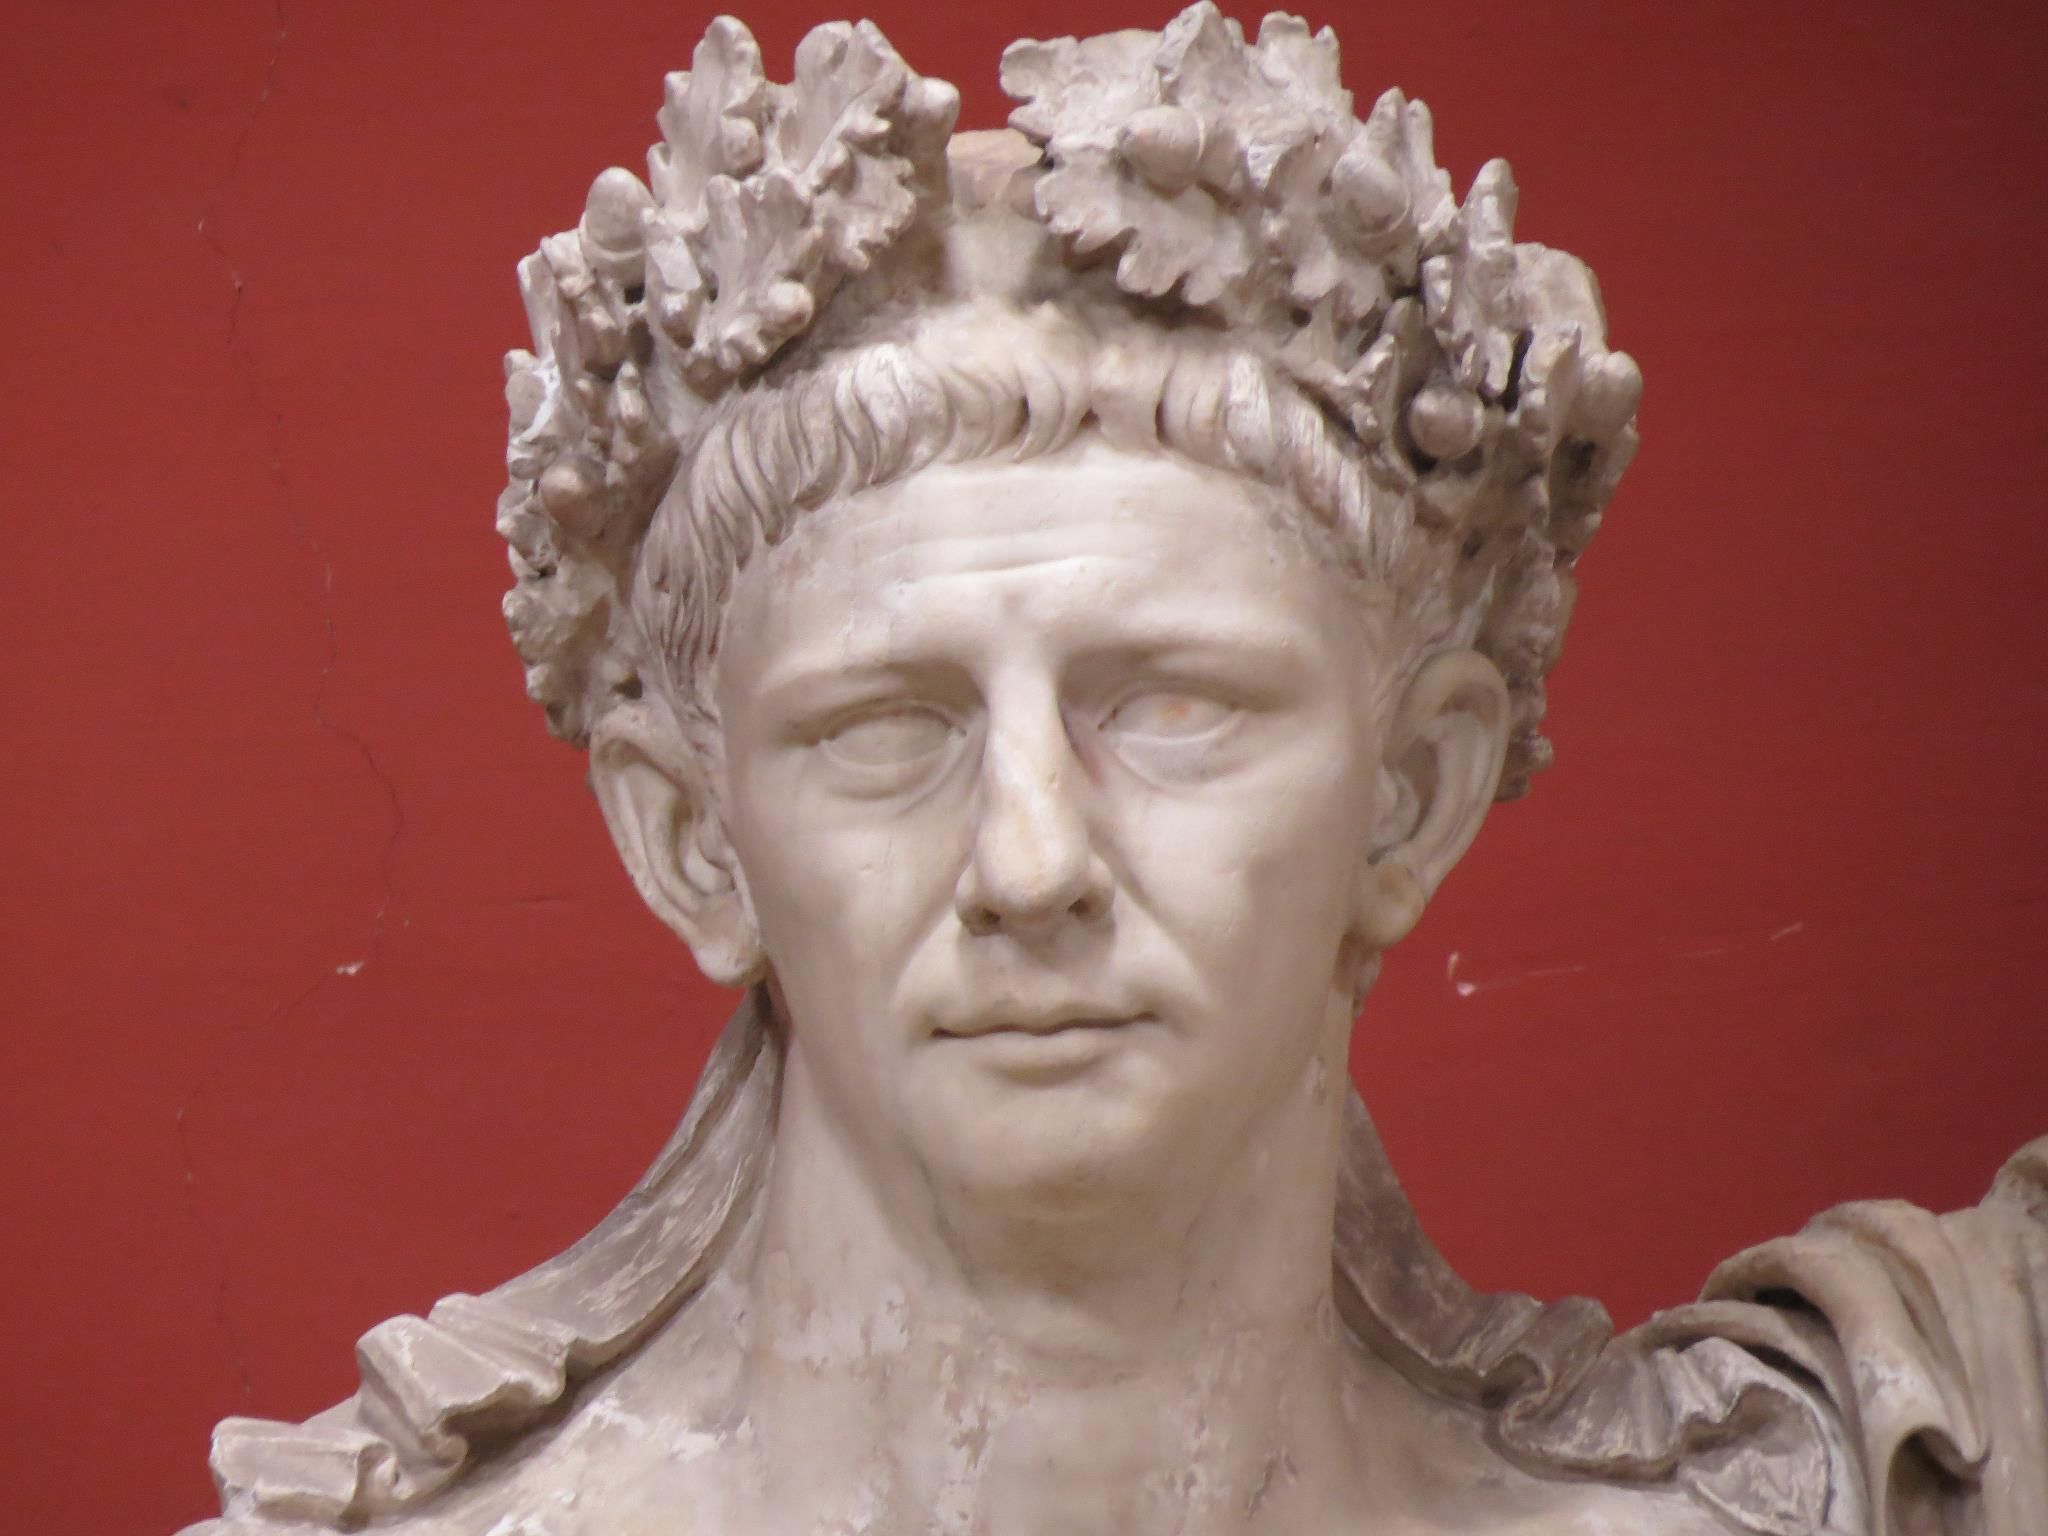 Claudius